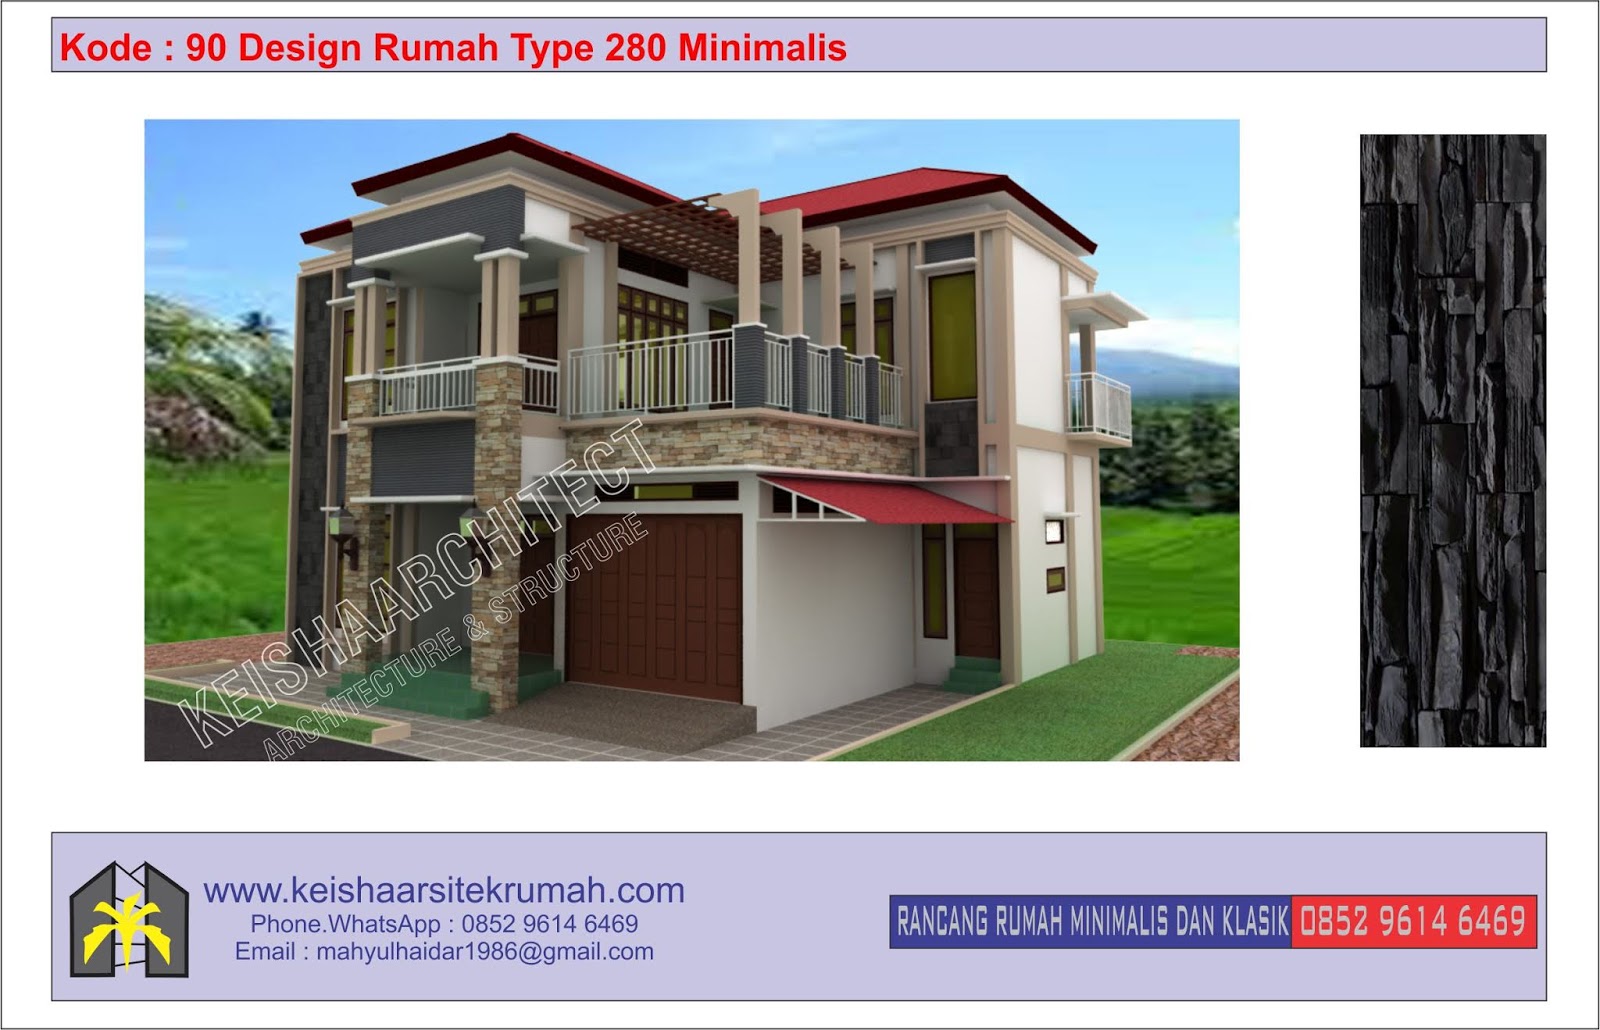 Kode 90 Design Rumah Type 280 Minimalis Lokasi Lamtemen Banda